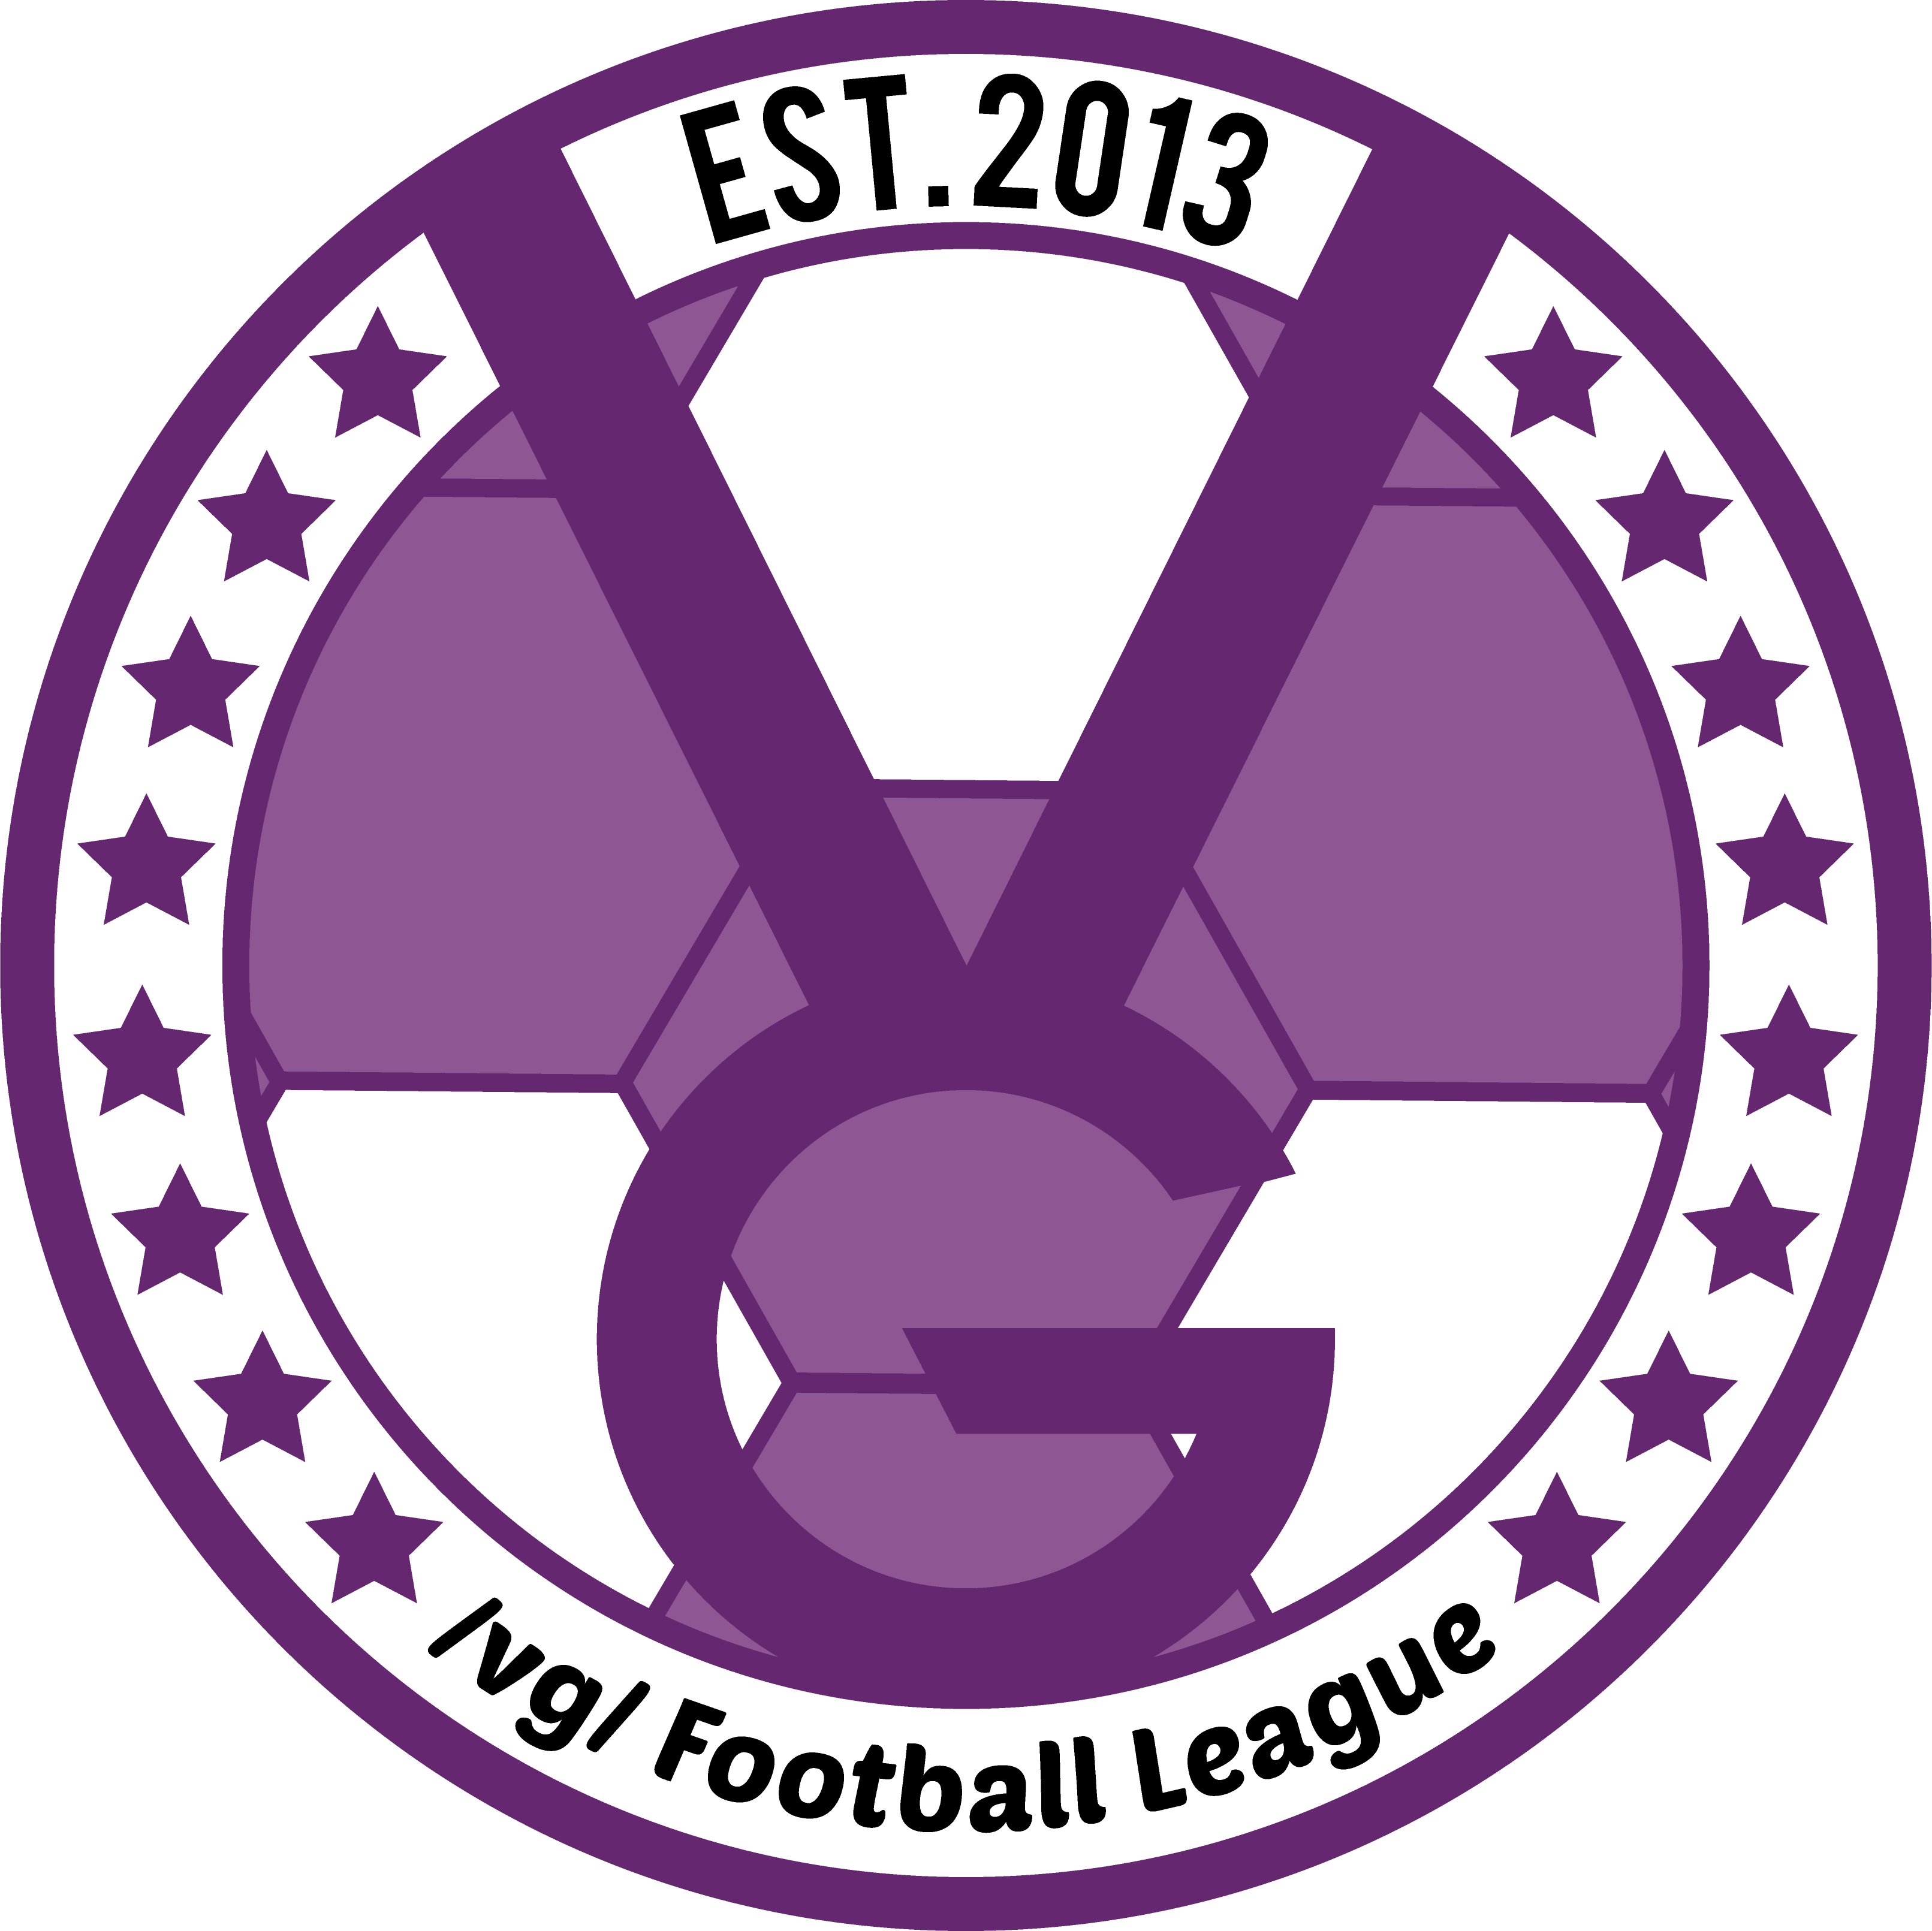 /vg/ League 6